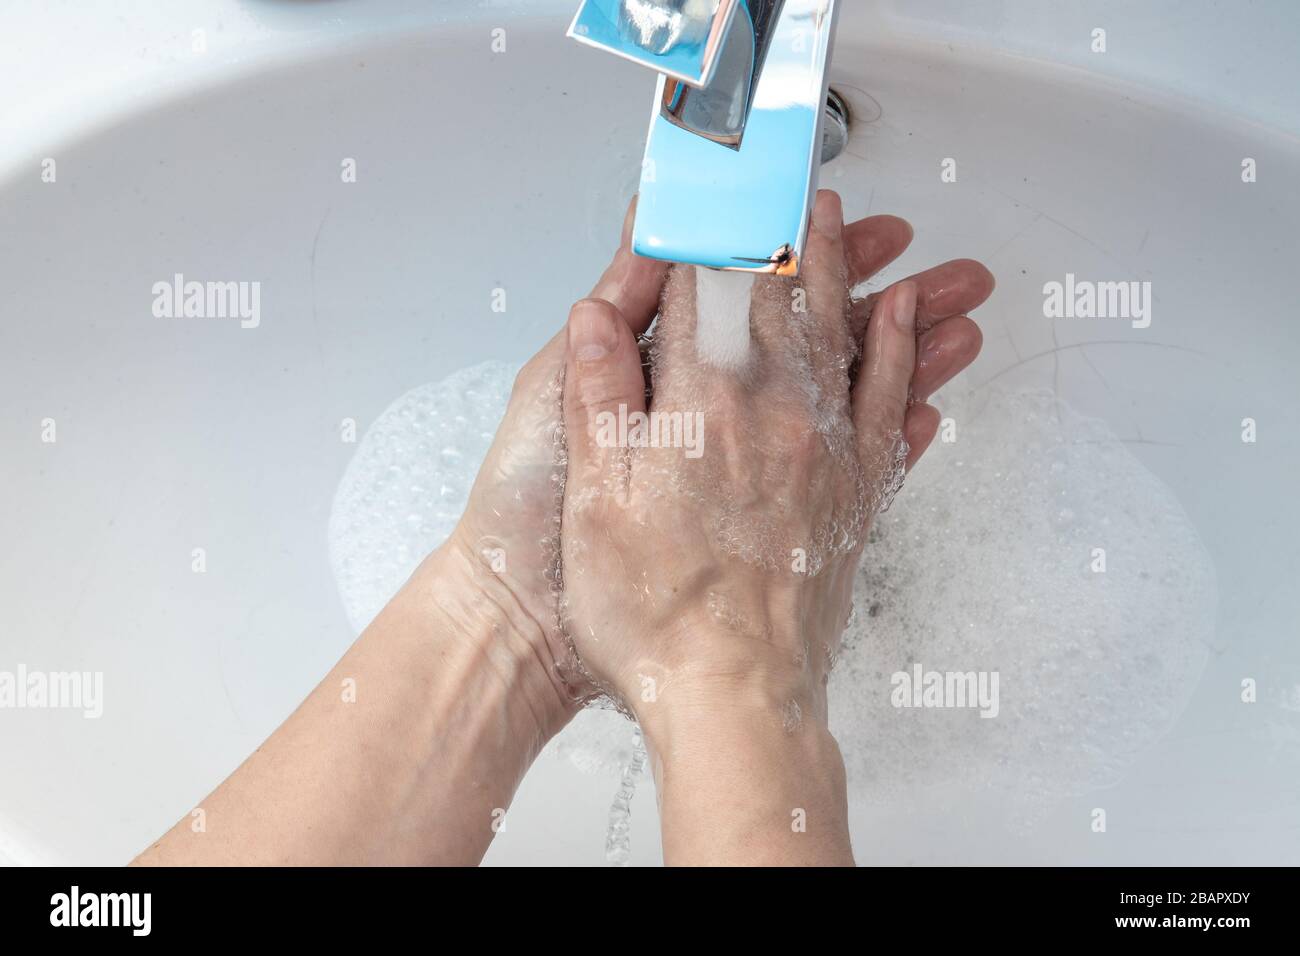 Arriba cerca arriba ver a la mujer de pie en el cuarto de baño lavándose las manos bajo el agua que fluye enjuagando el jabón. Detenga el virus de corona covid19, mantenga la higiene personal Foto de stock